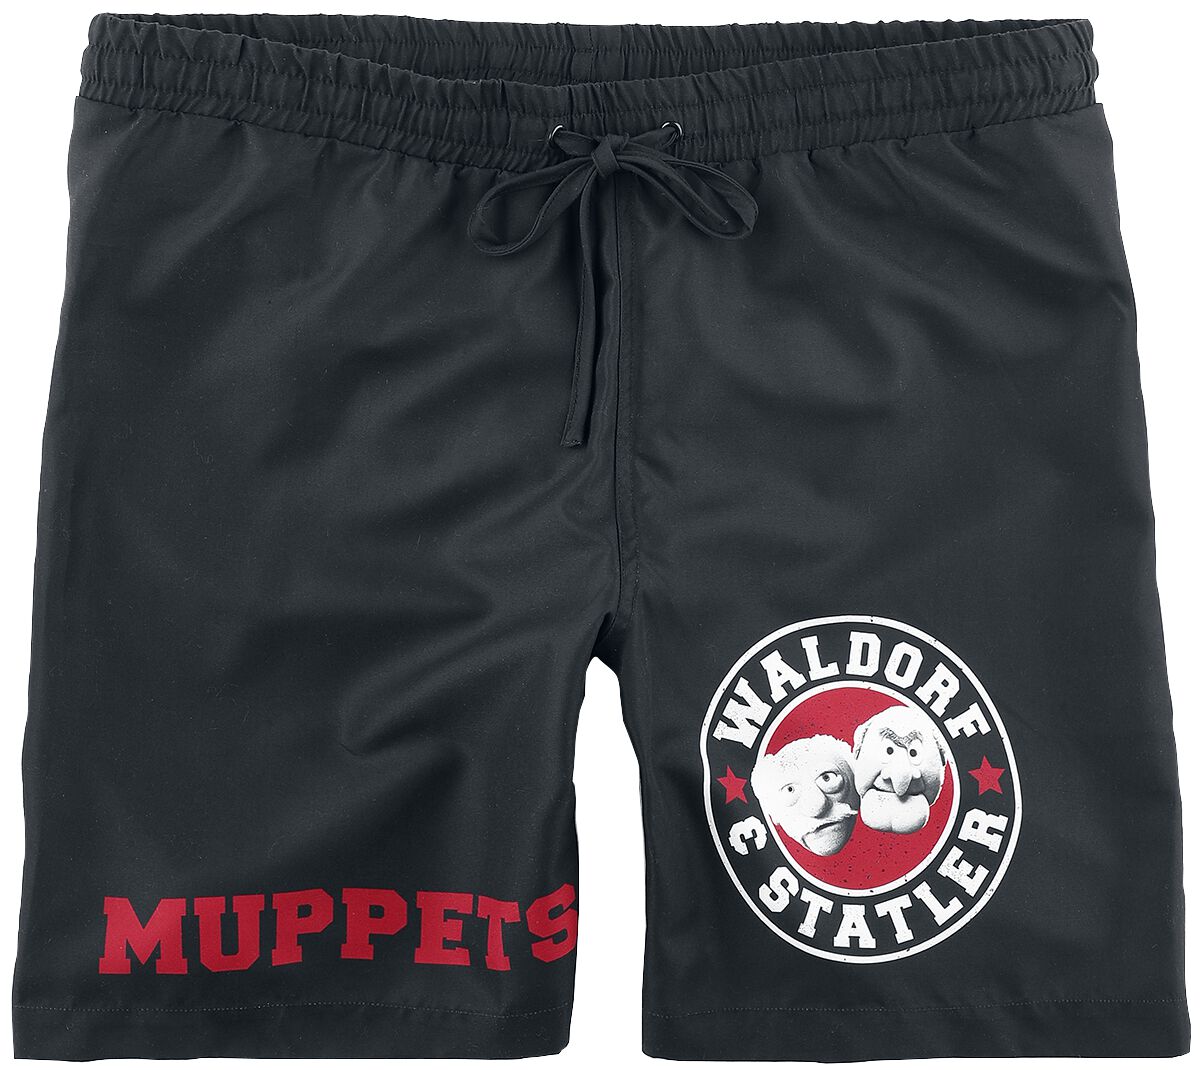 Die Muppets Badeshort - Waldorf & Statler - Old School - S bis XL - für Männer - Größe M - schwarz  - EMP exklusives Merchandise!